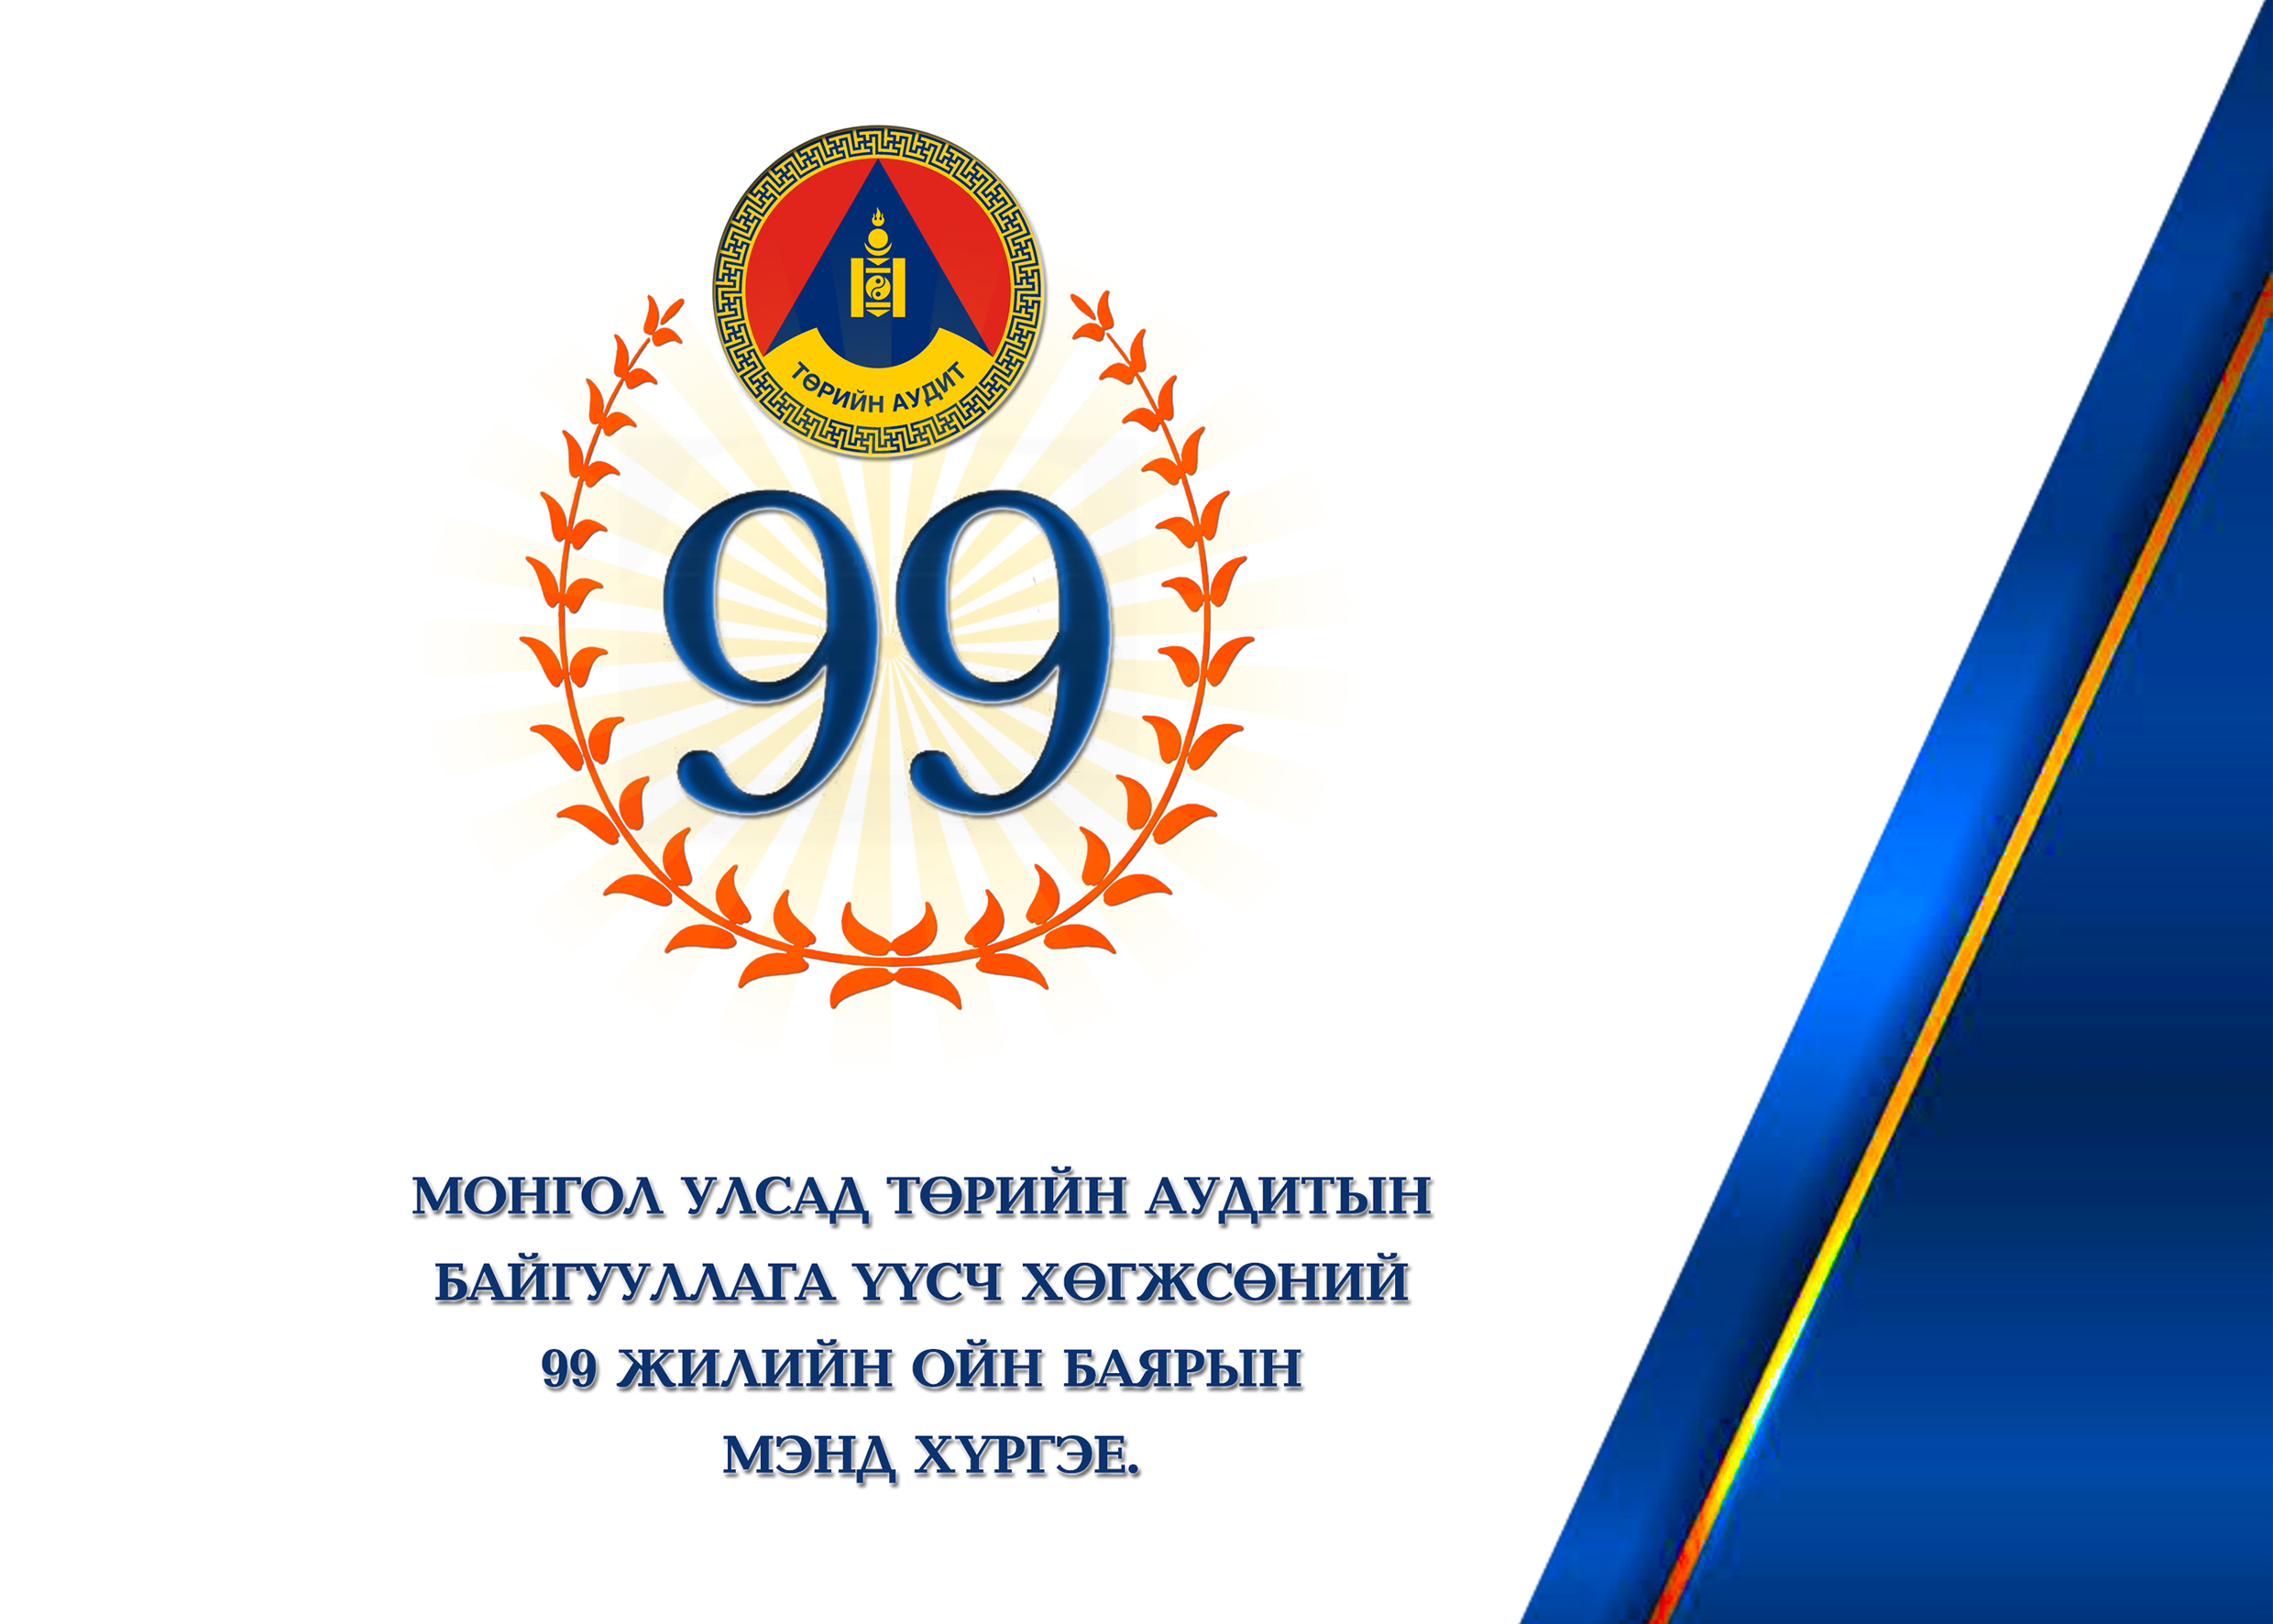 Дорноговь ТАГ - Монгол Улсын Ерөнхий аудиторын мэндчилгээ